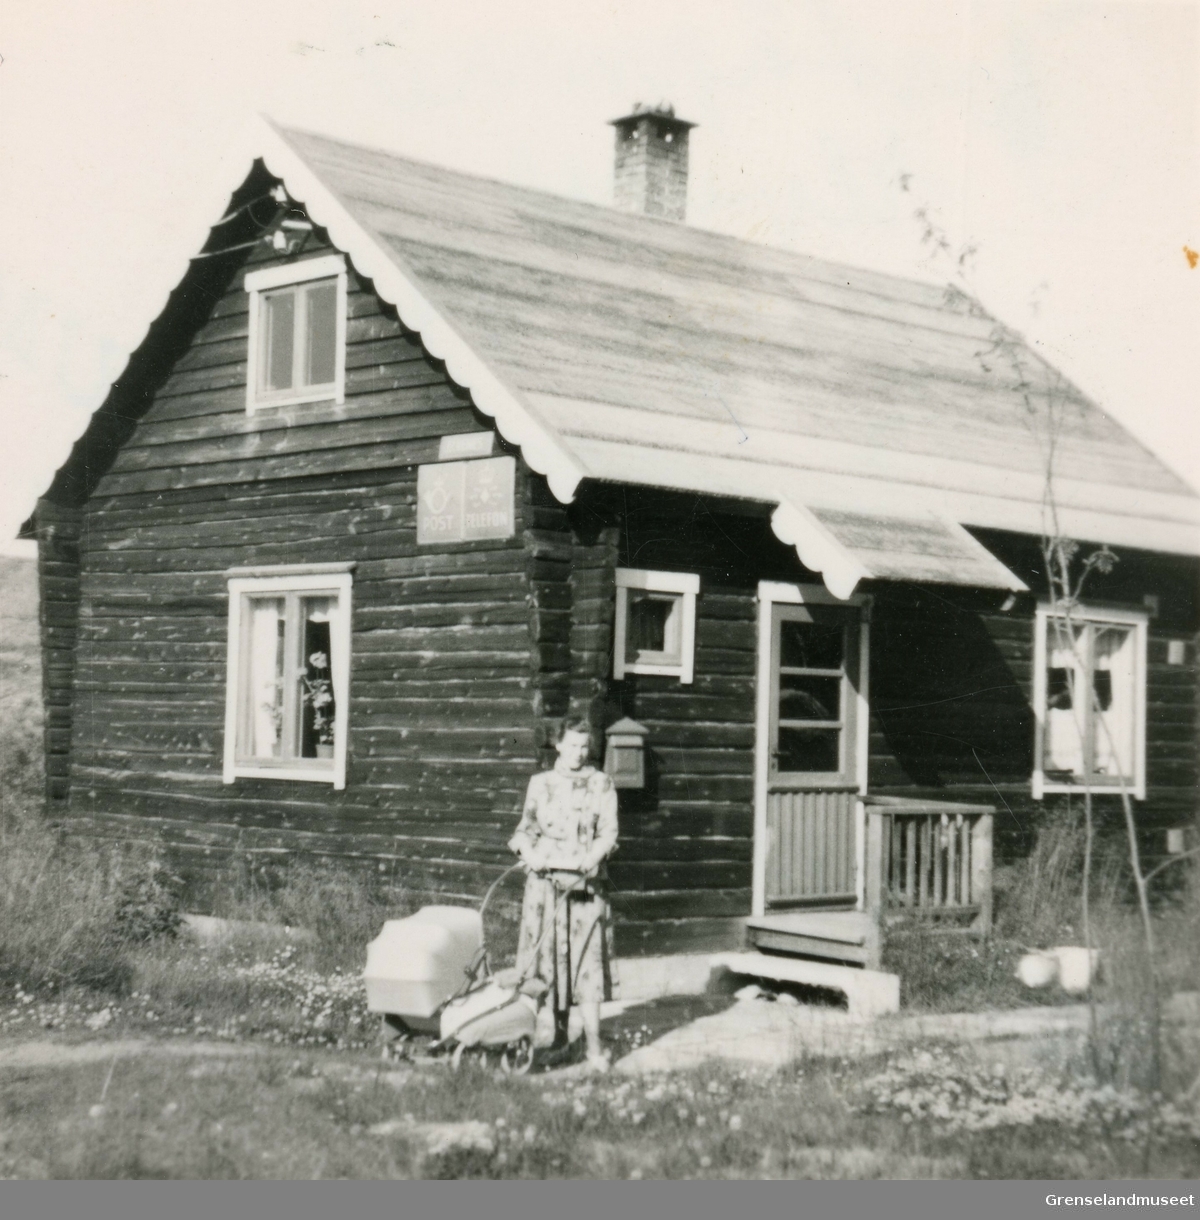 Poståpneriet på Elvenes i Sør-Varanger, her fra 1953. 
Poståpner Jenny Thomassen står utenfor huset som både fungerte som bolig og poståpneri. 
I barnevogna ligger den nyfødte datteren Bente Thomassen. 
